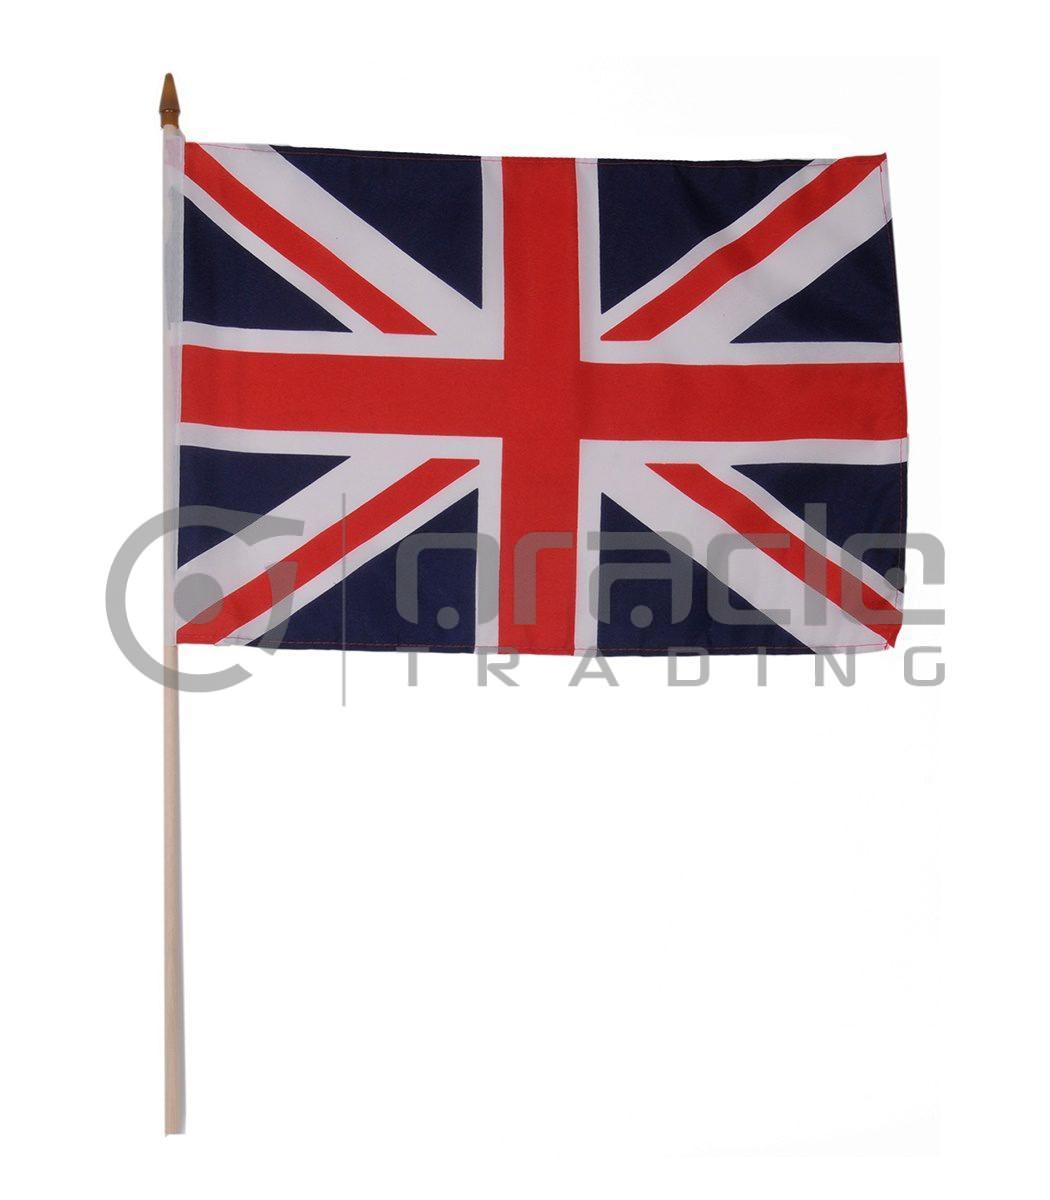 UK Large Stick Flag - 12"x18" - 12-Pack (United Kingdom)